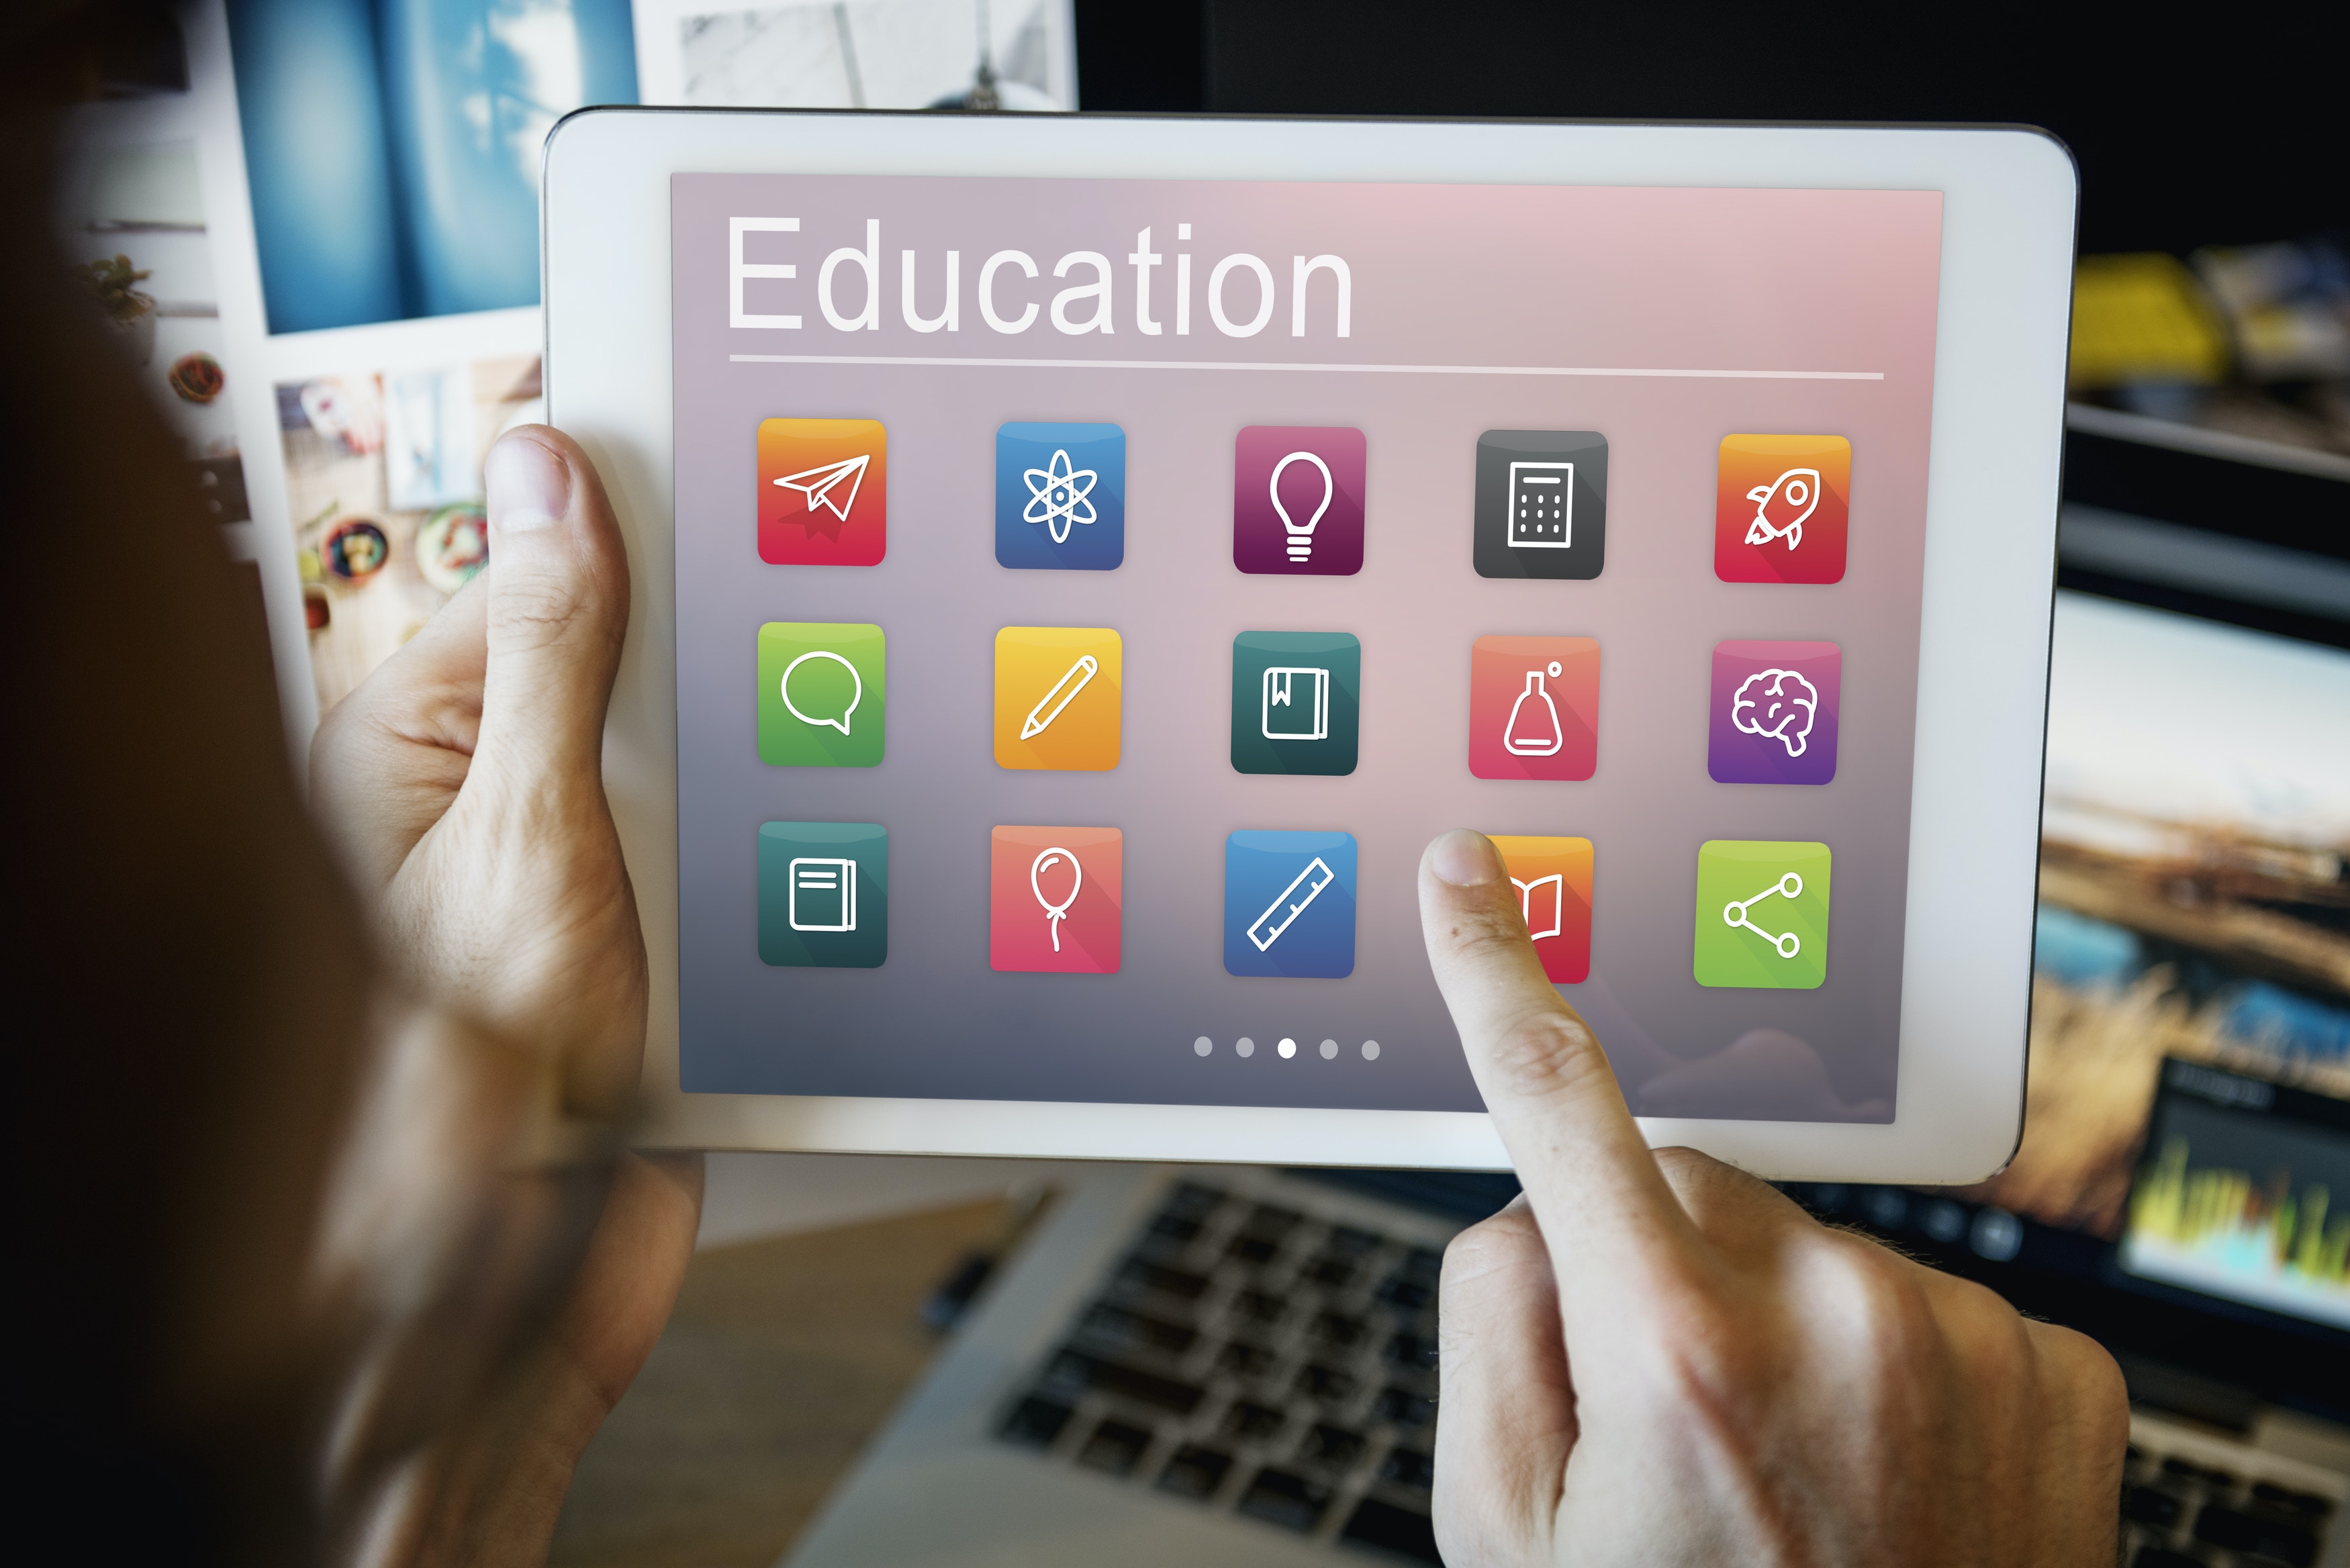 Fotografía de una Tablet sujetada por una persona con ambas manos en posición horizontal y tomada sobre el hombro de la persona. El fondo de la fotografía se muestra borroso y en la pantalla de la Tablet se muestra una galería de Apps con el título “Education” (Educación).